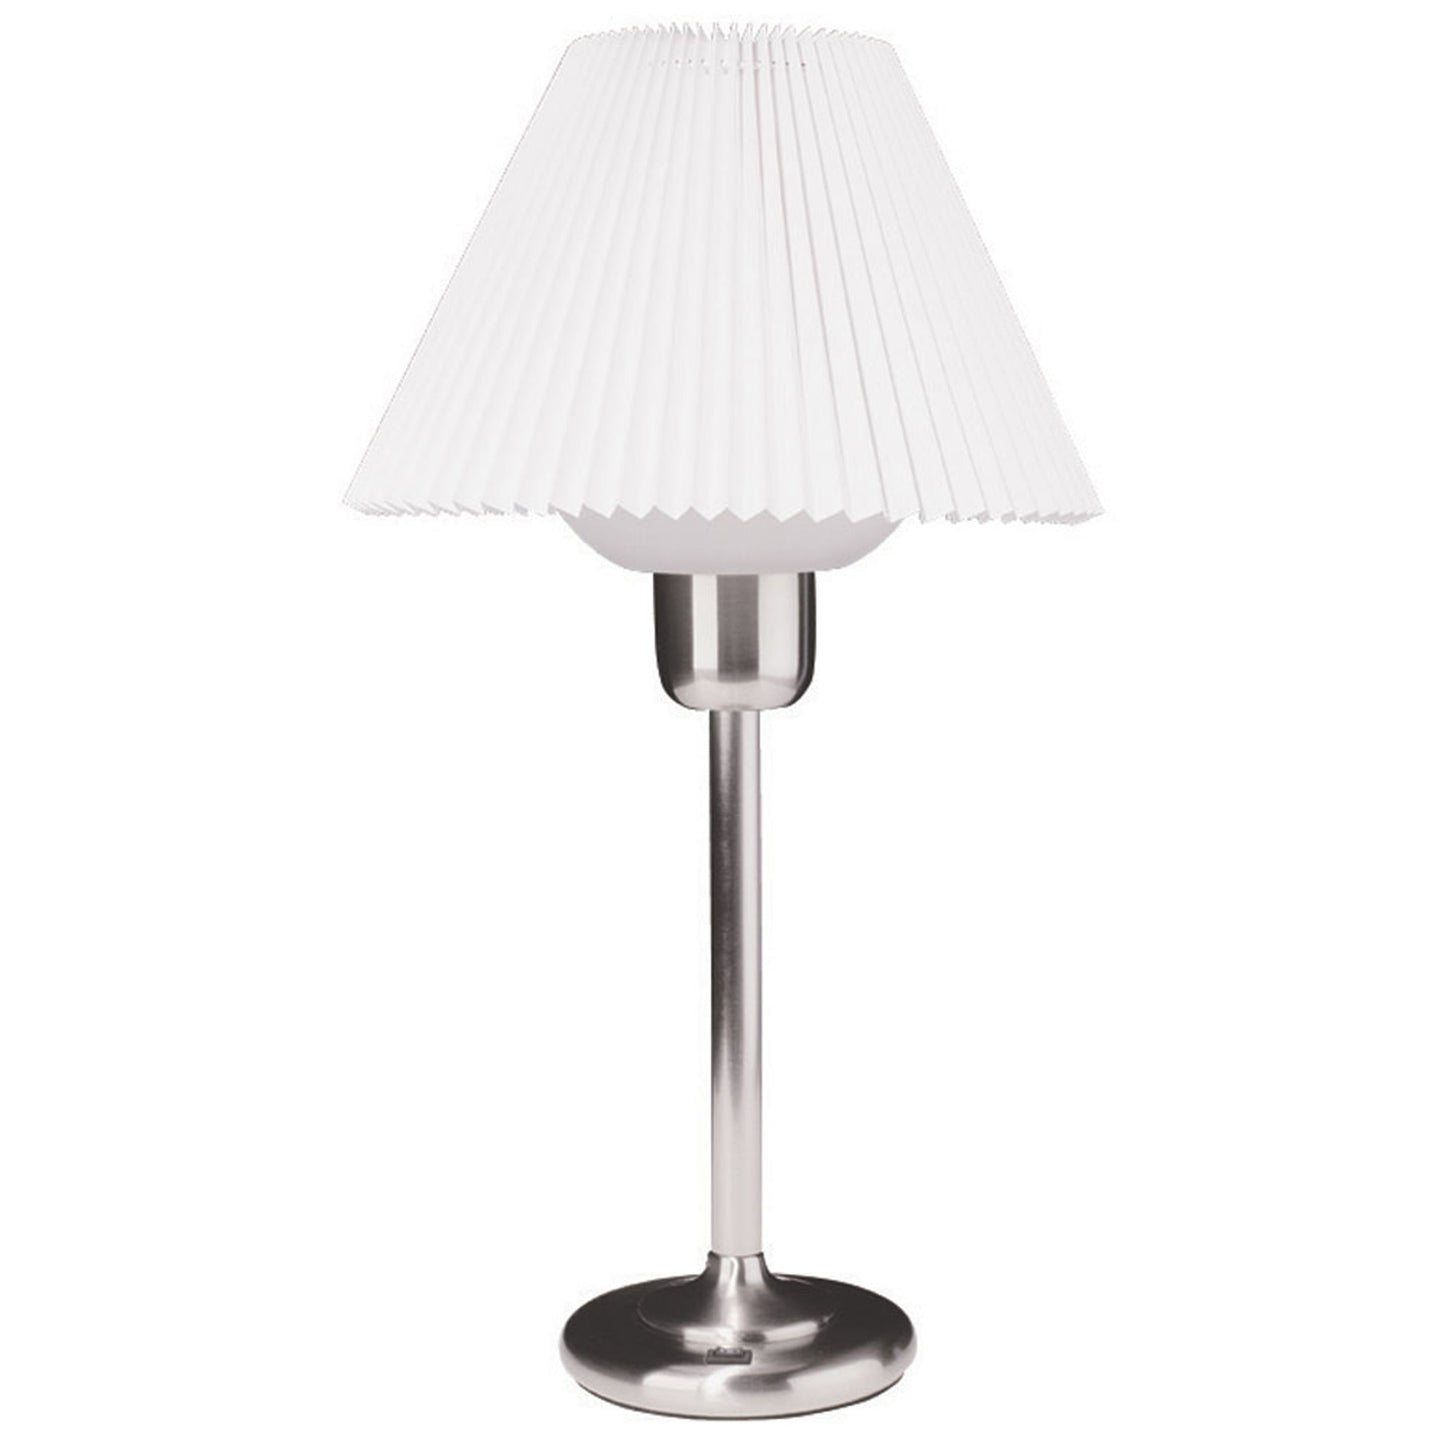 Lampe de table Dainolite en chrome satiné avec ampoule de 200 watts incluse